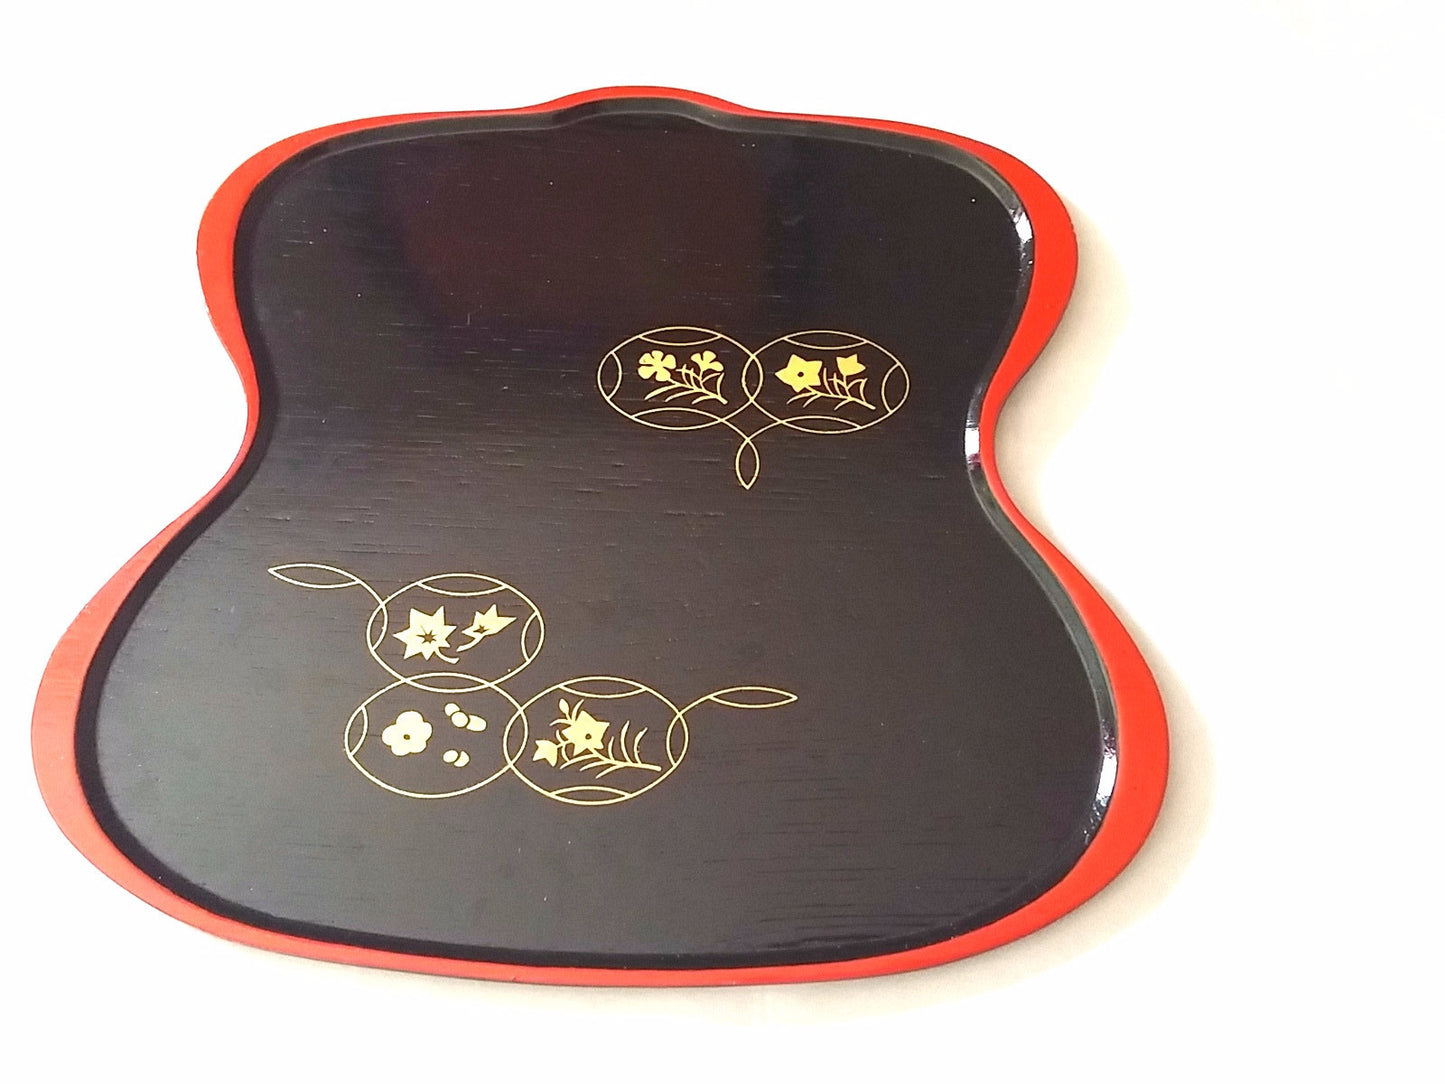 Vintage Black & Red Japanese Serving Display Tray Gold Ornamental Modern Design - Dirty 30 Vintage | Vintage Clothing, Vintage Jewelry, Vintage Accessories